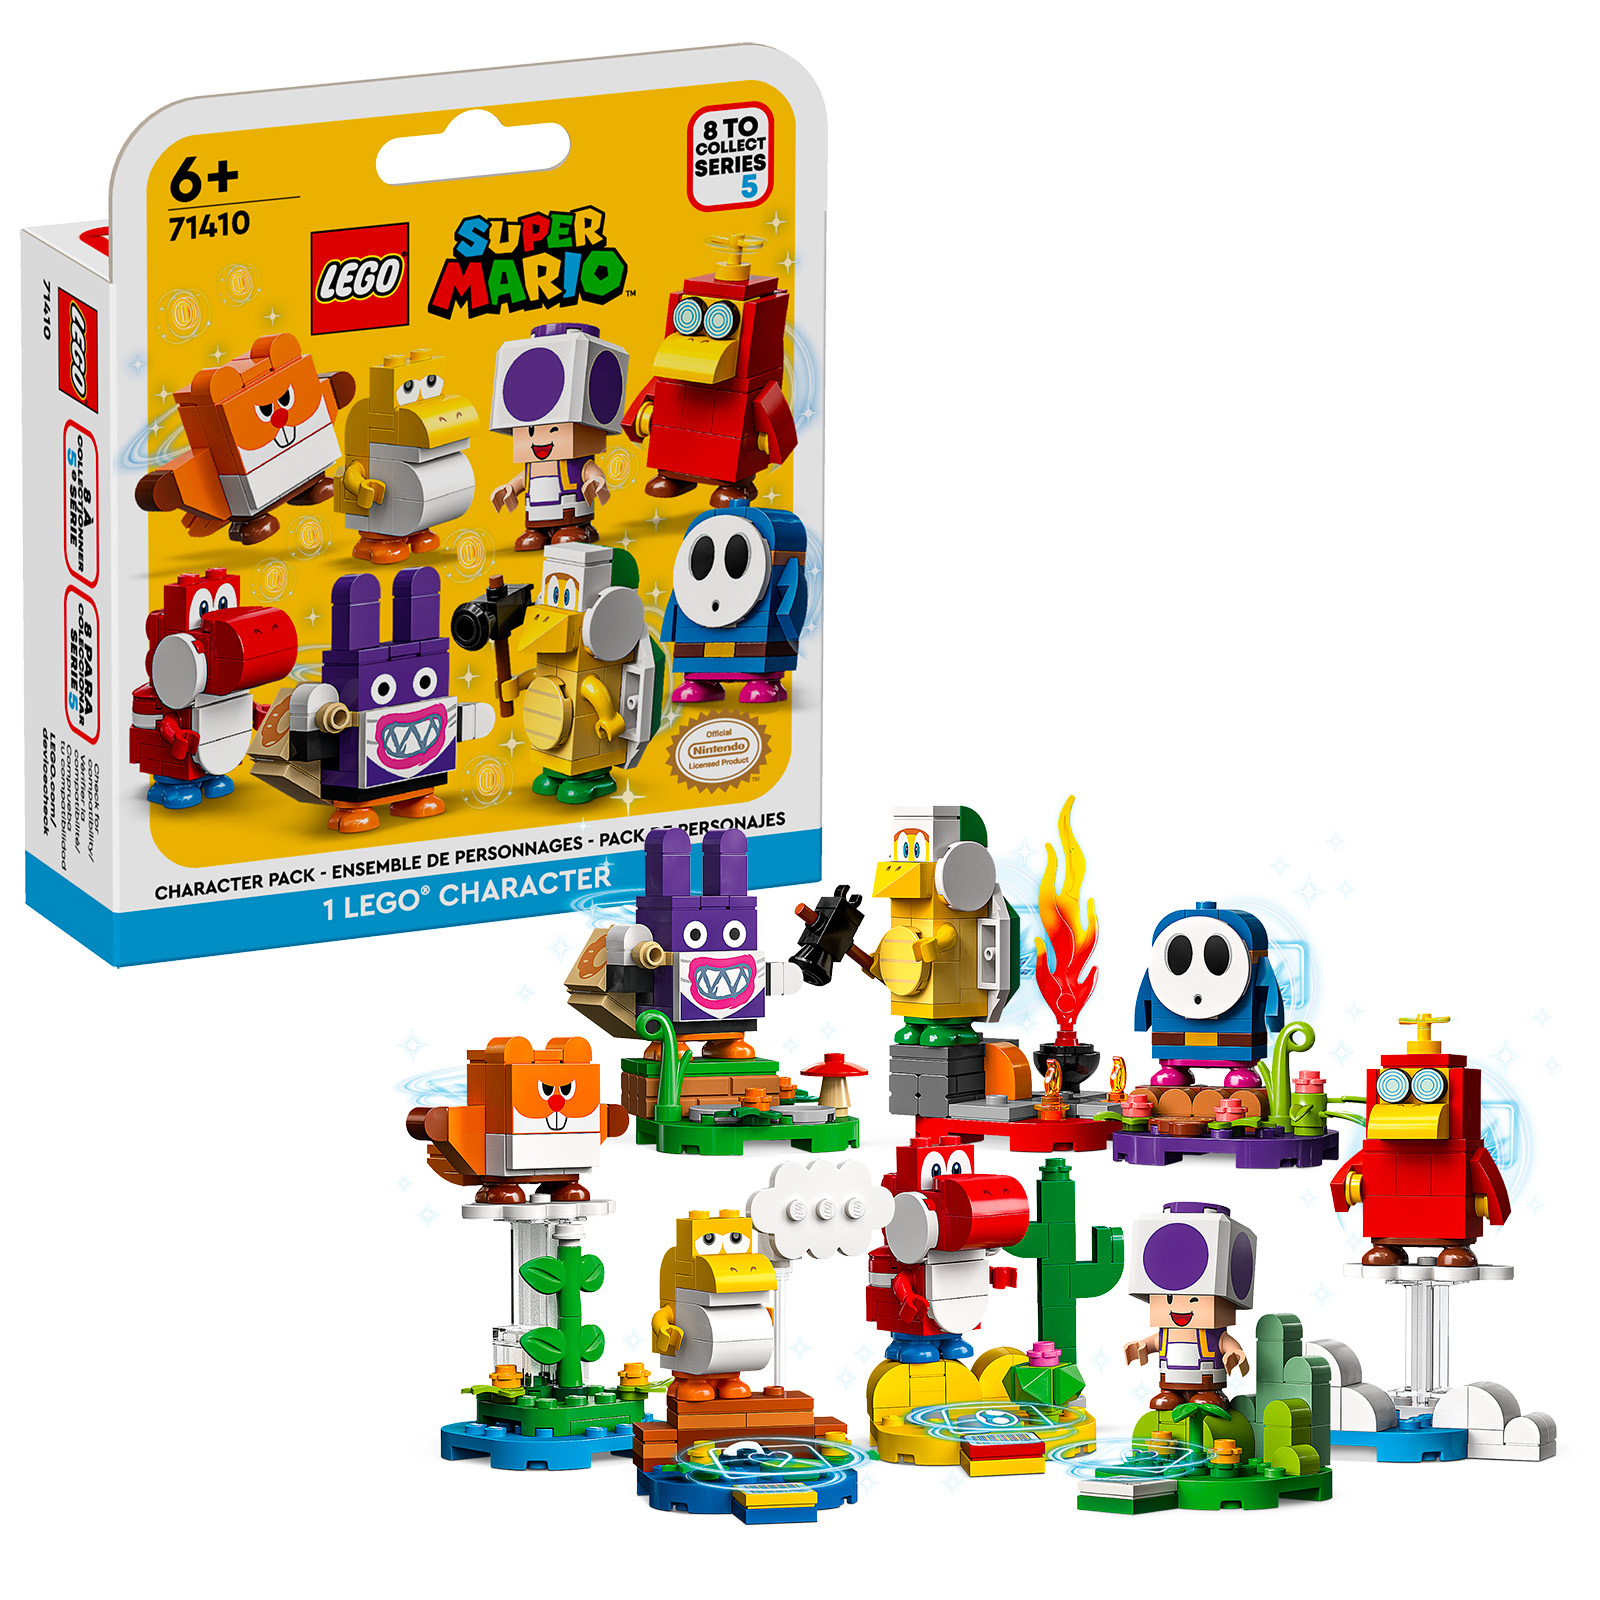 Uusi LEGO Super Mario: viides kerättävien hahmojen sarja on verkossa Shopissa